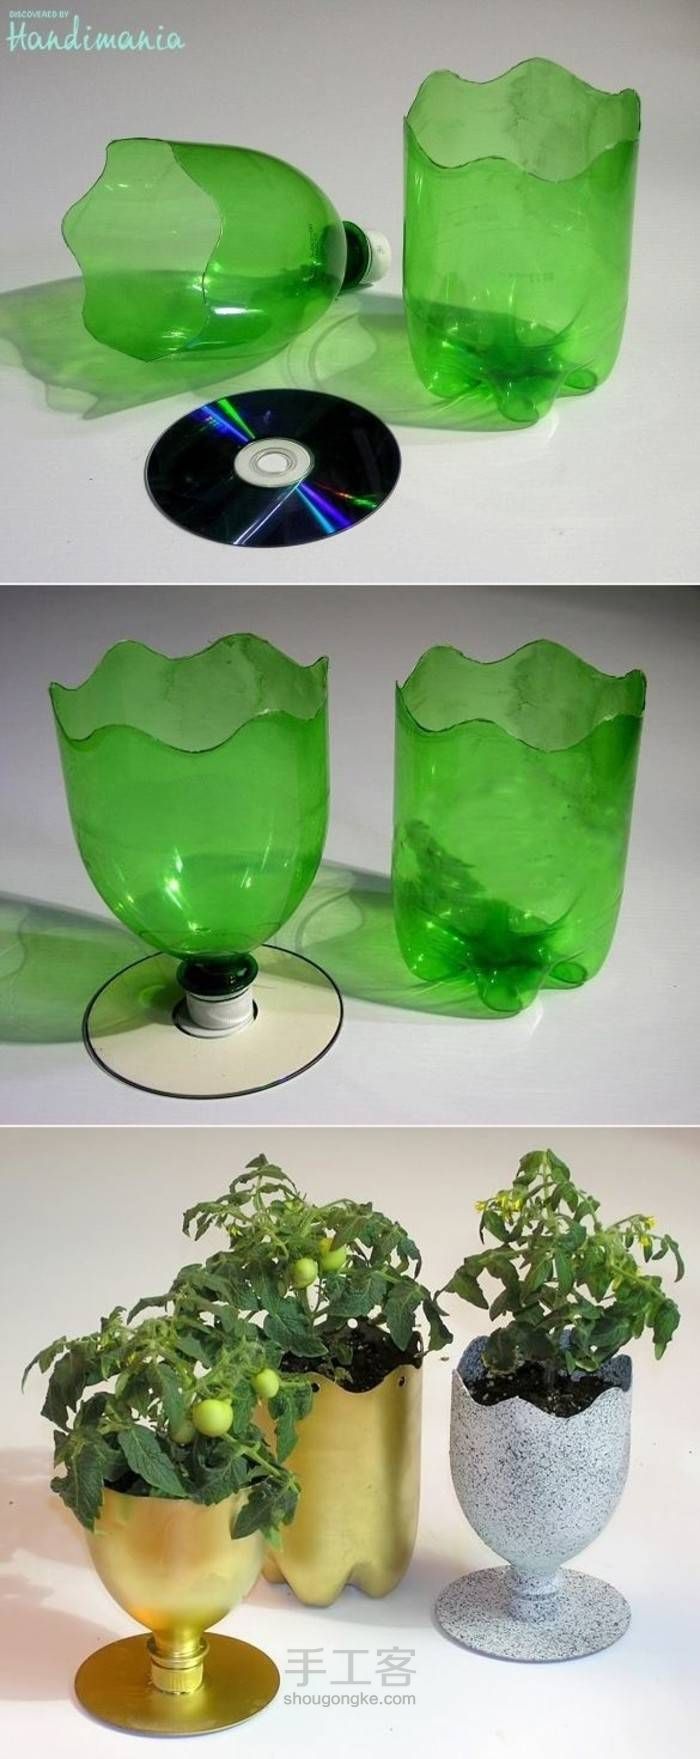 塑料瓶做花瓶 步骤图片